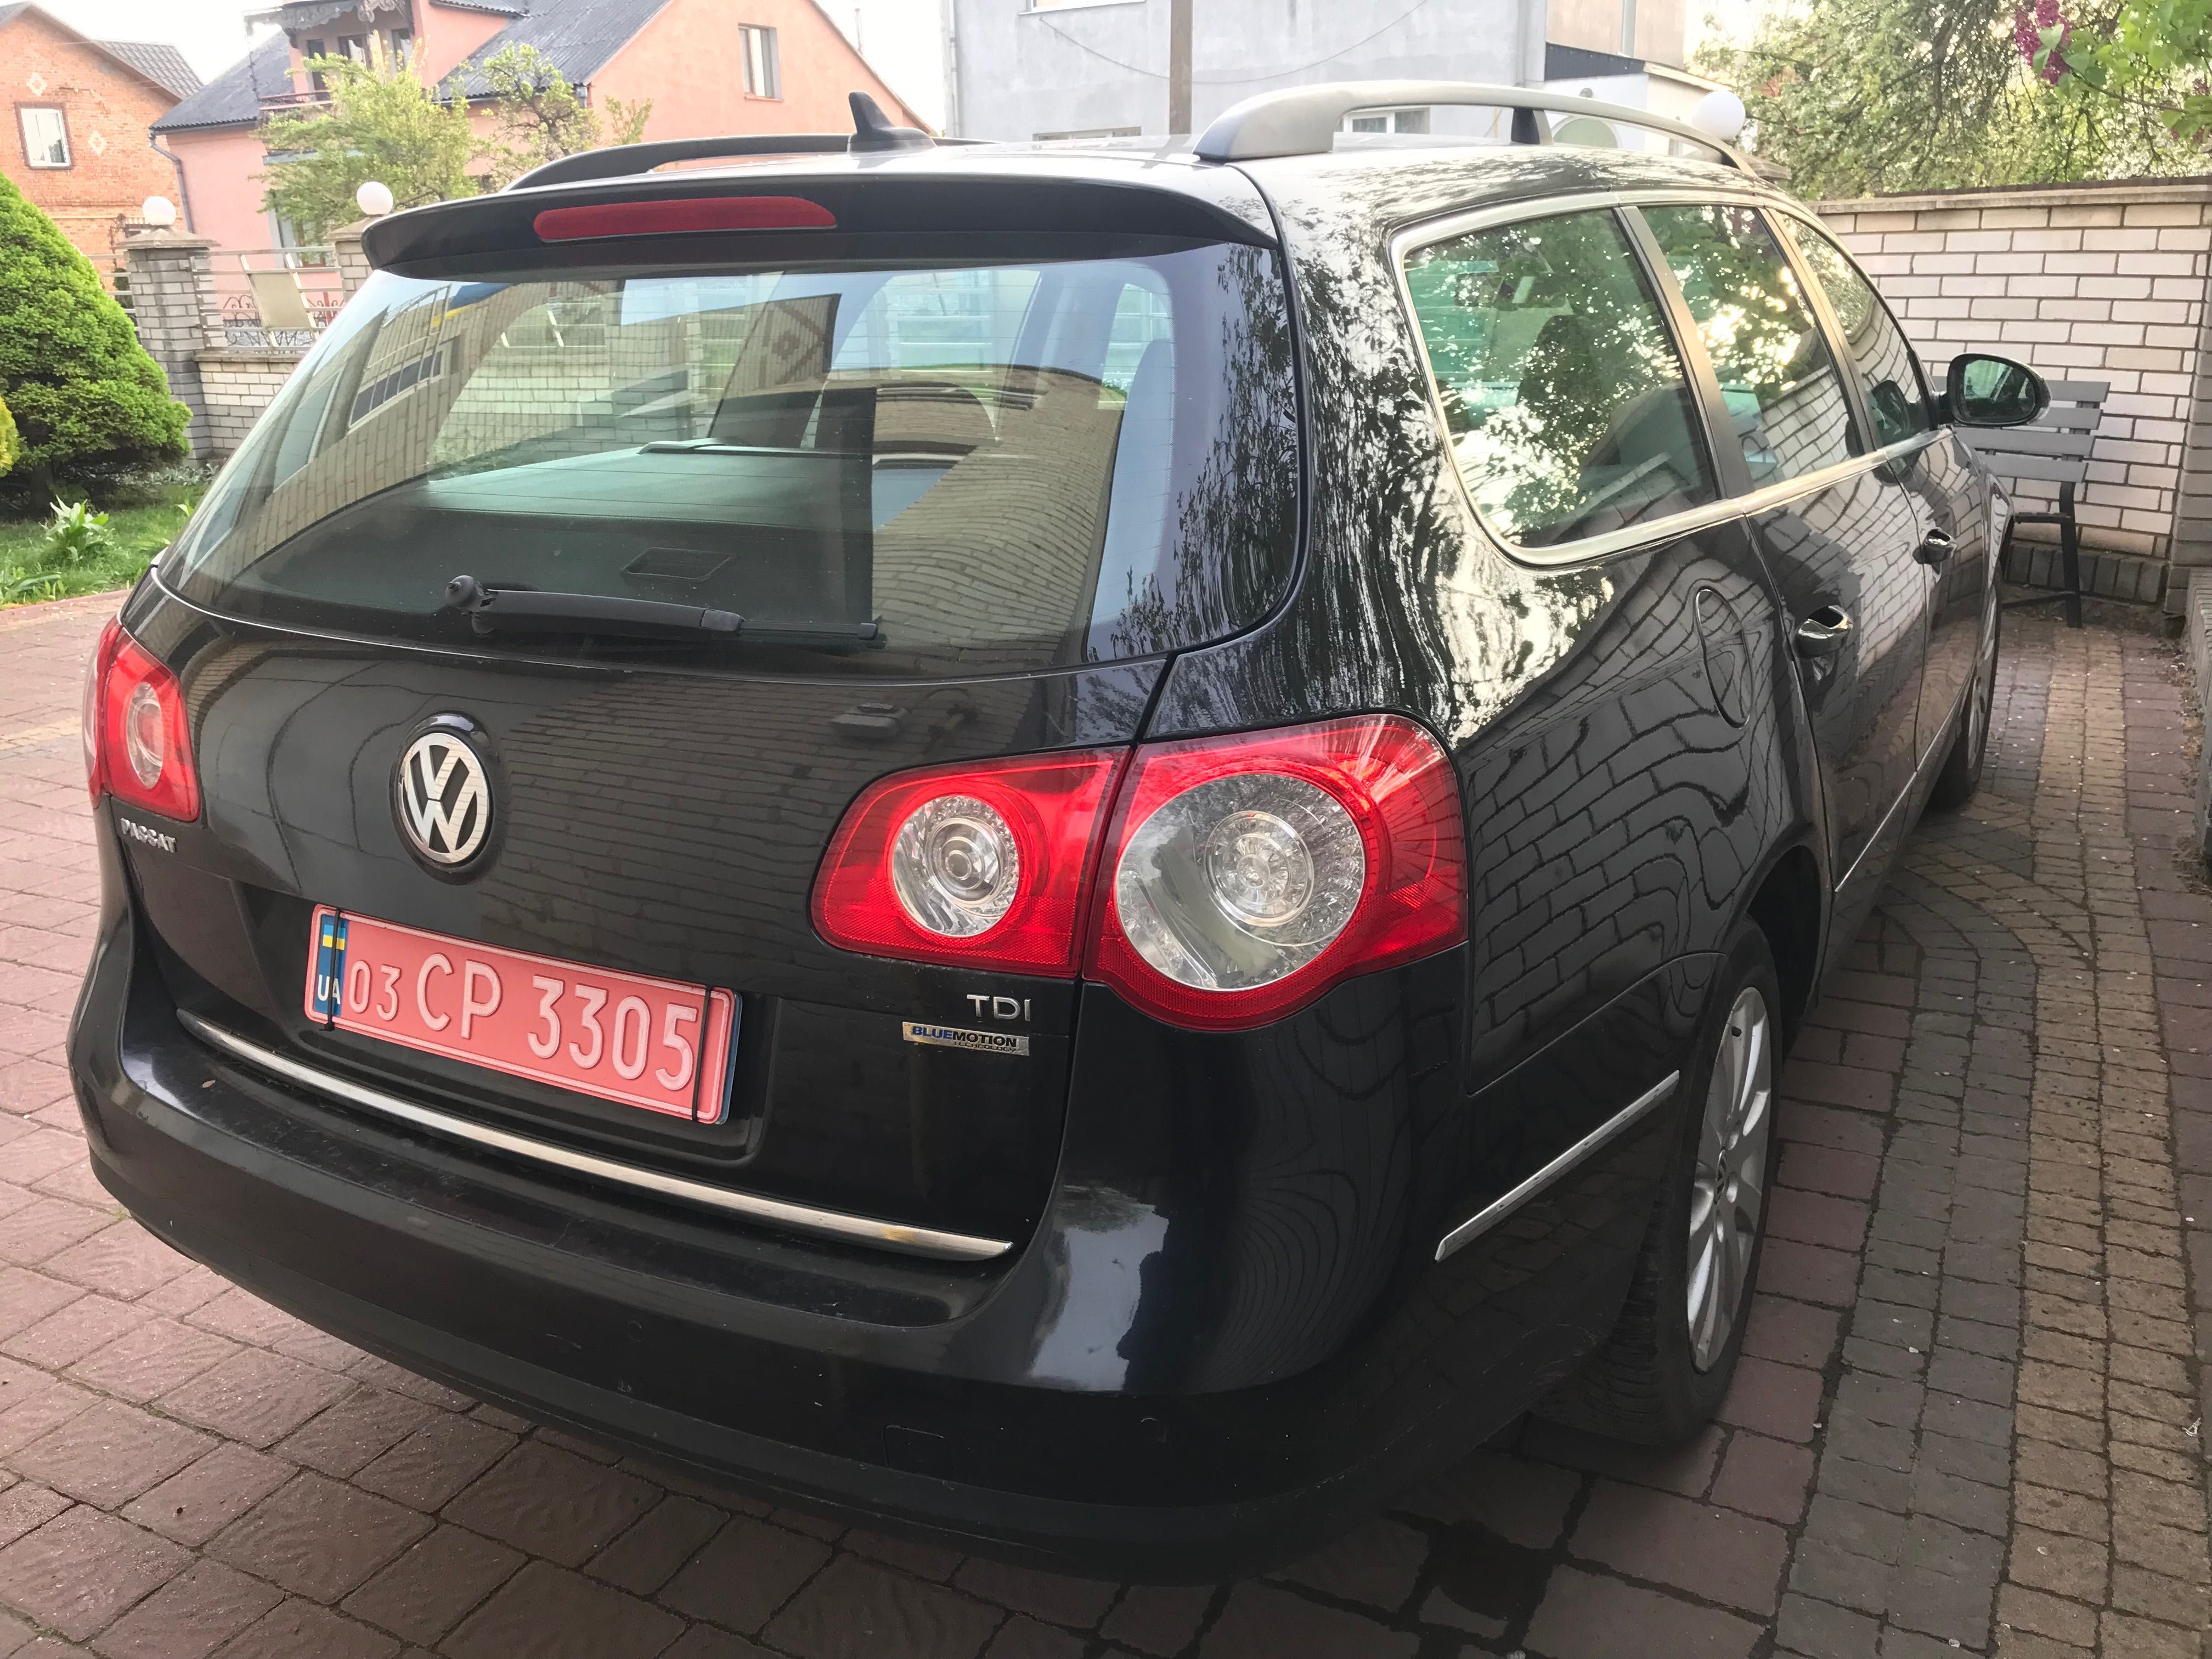 Volkswagen Pasat 1.6 Tdi